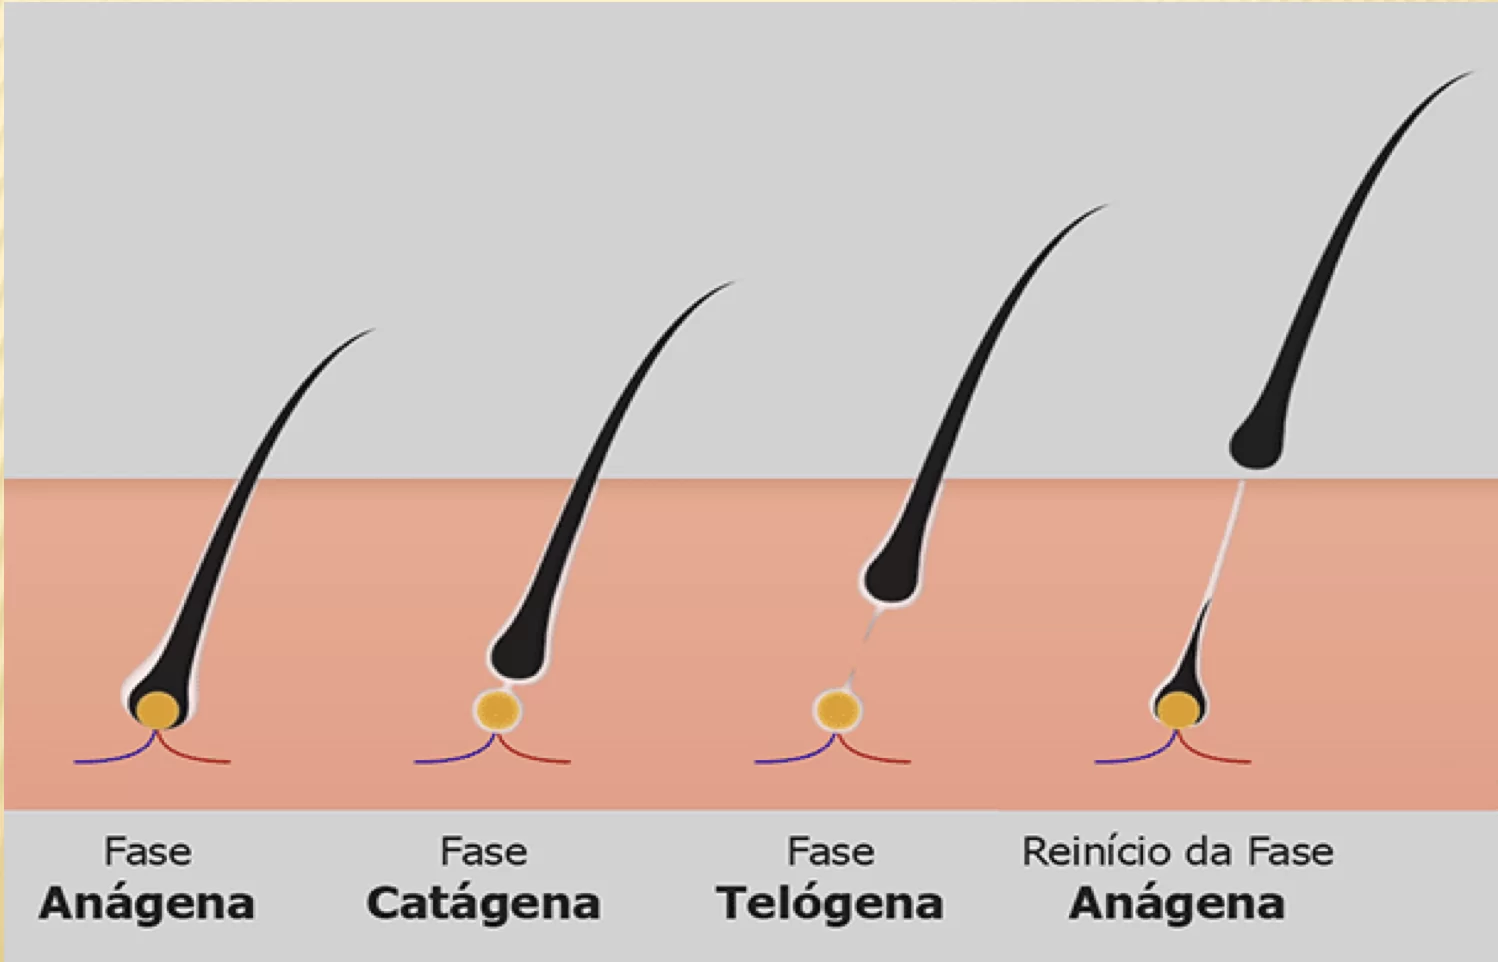 Fases do cabelo : você sabe como funciona o ciclo capilar? - Capellux